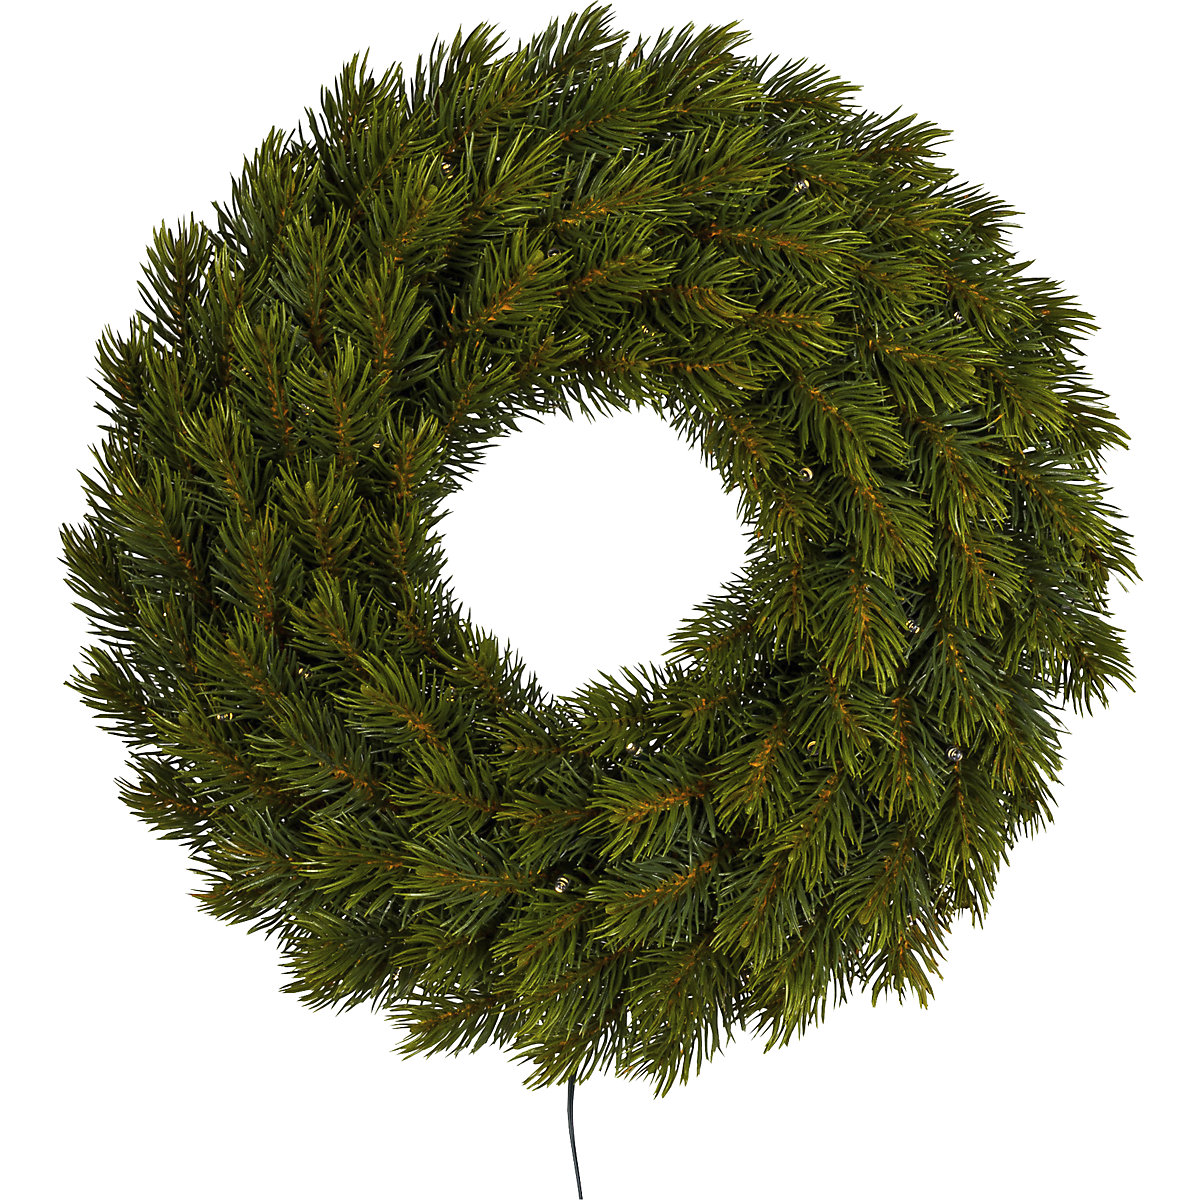 LED fir wreath